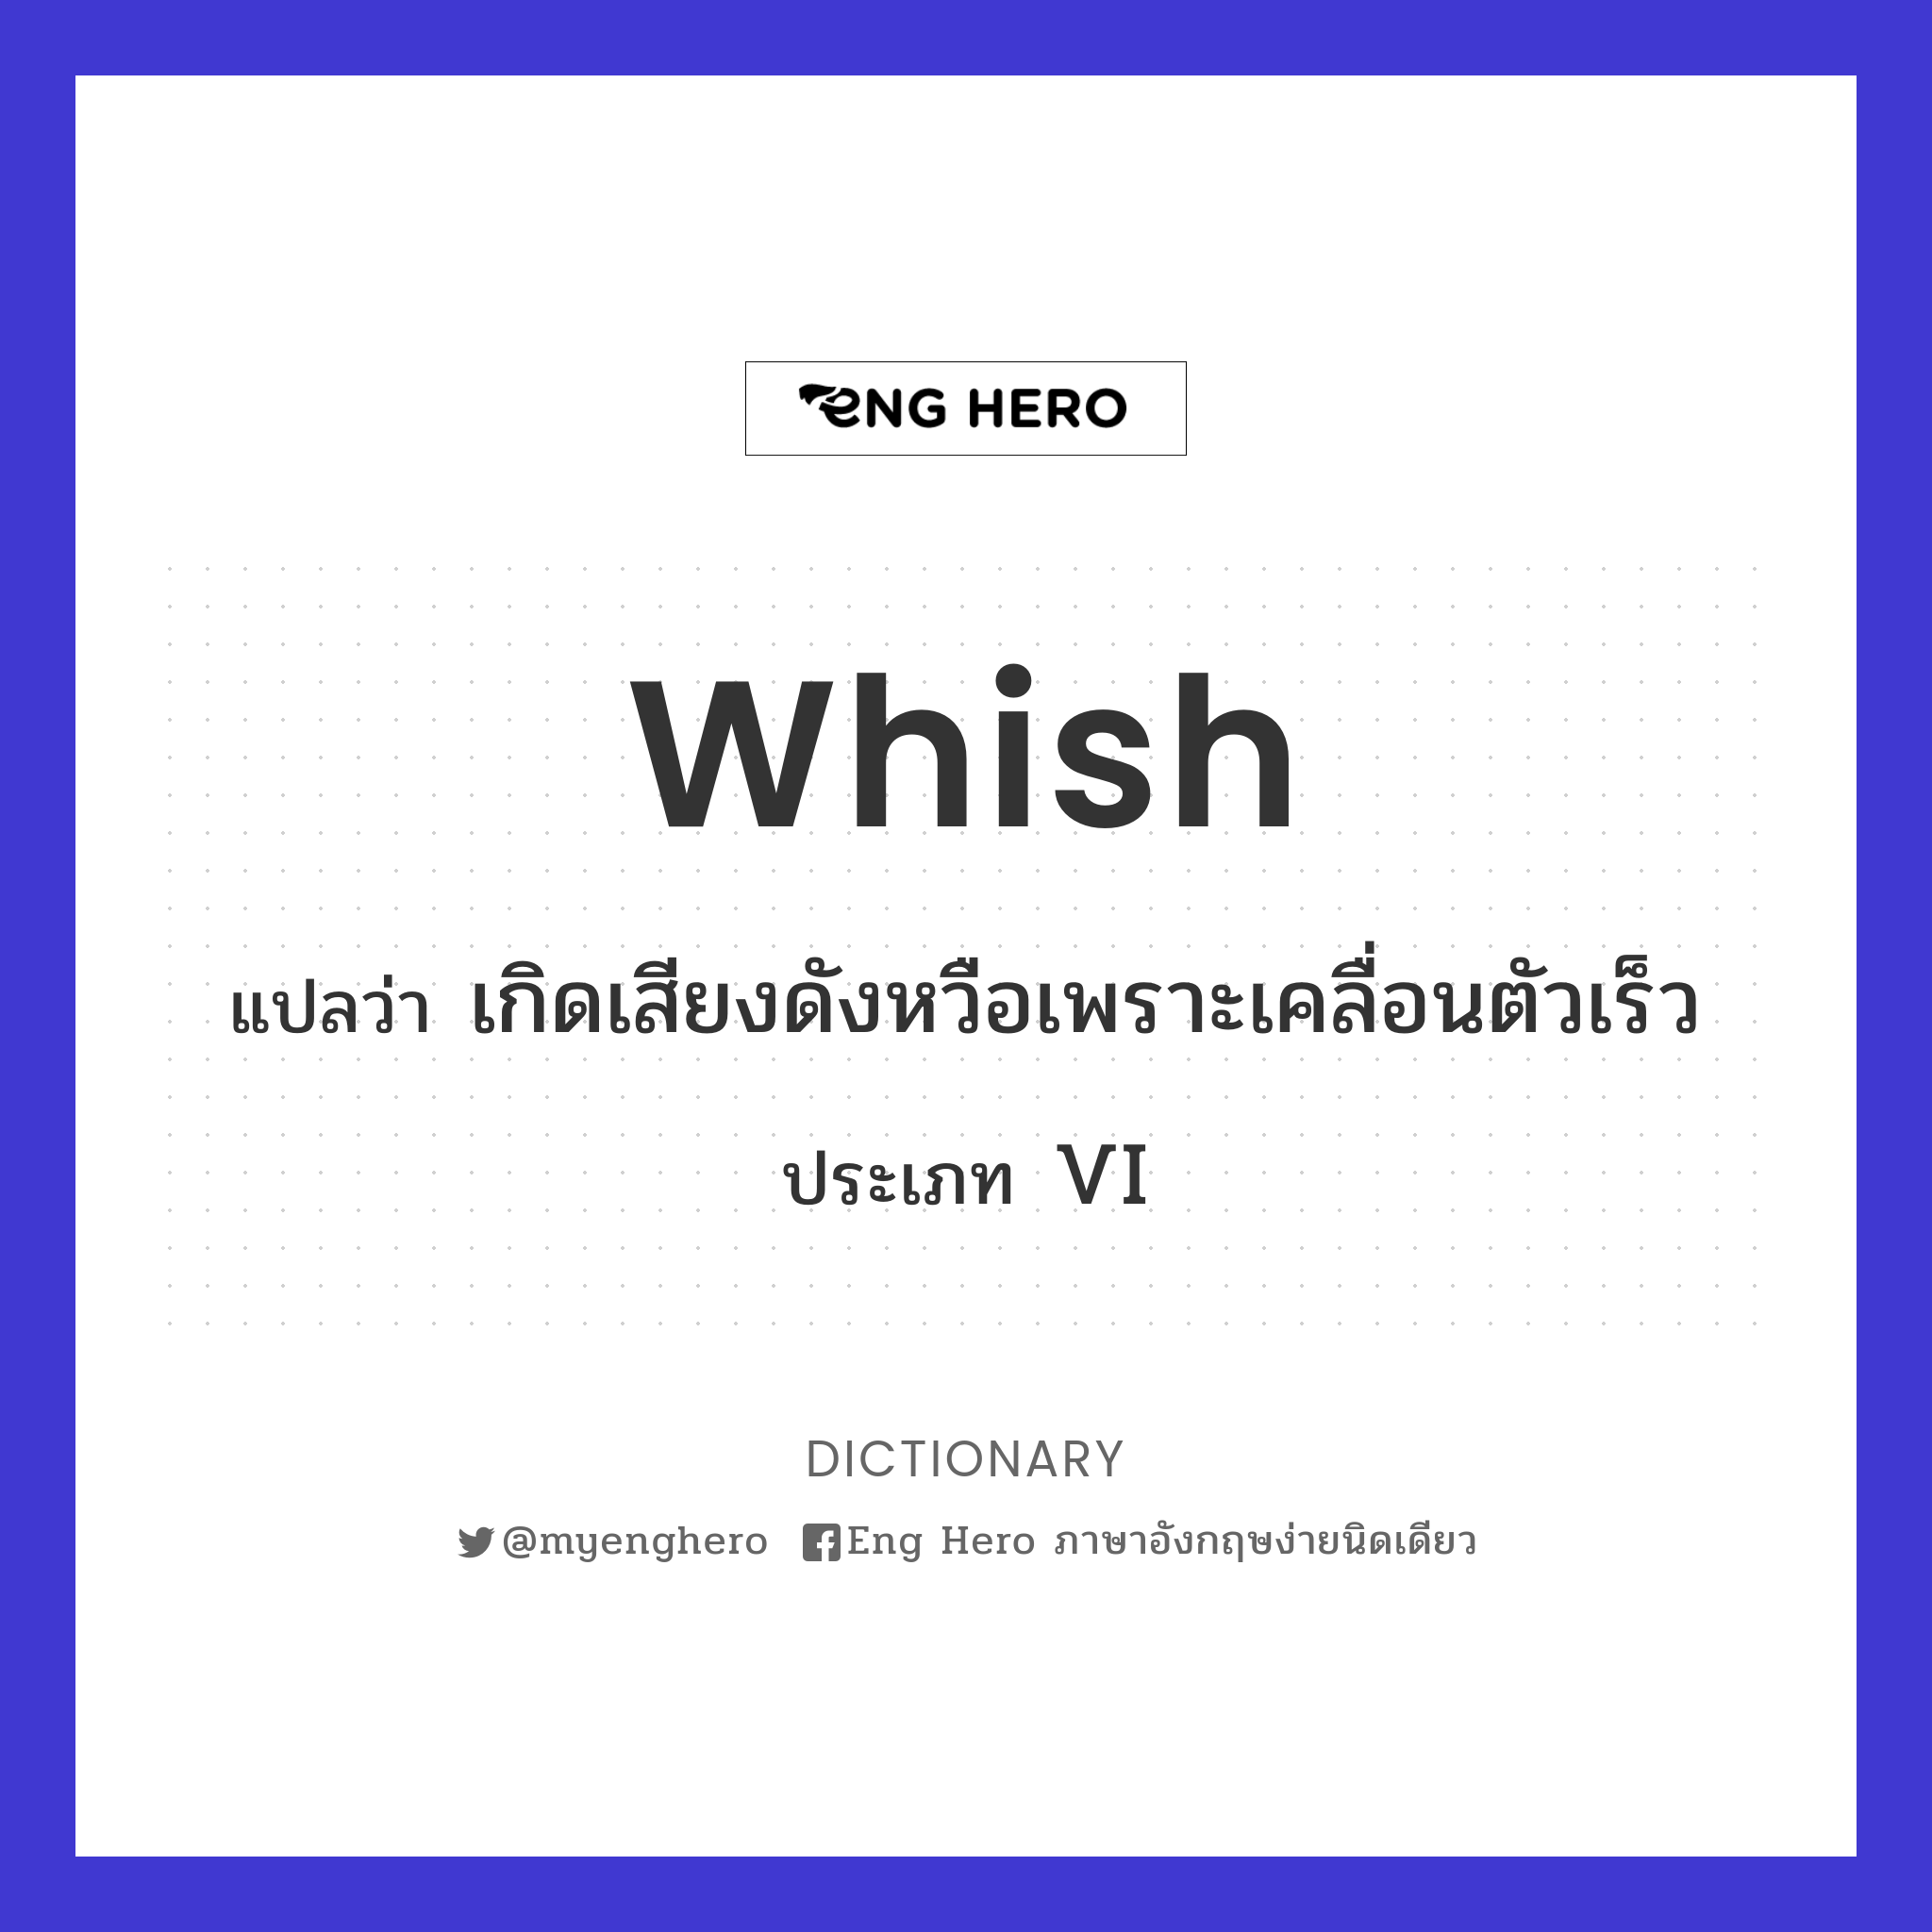 whish